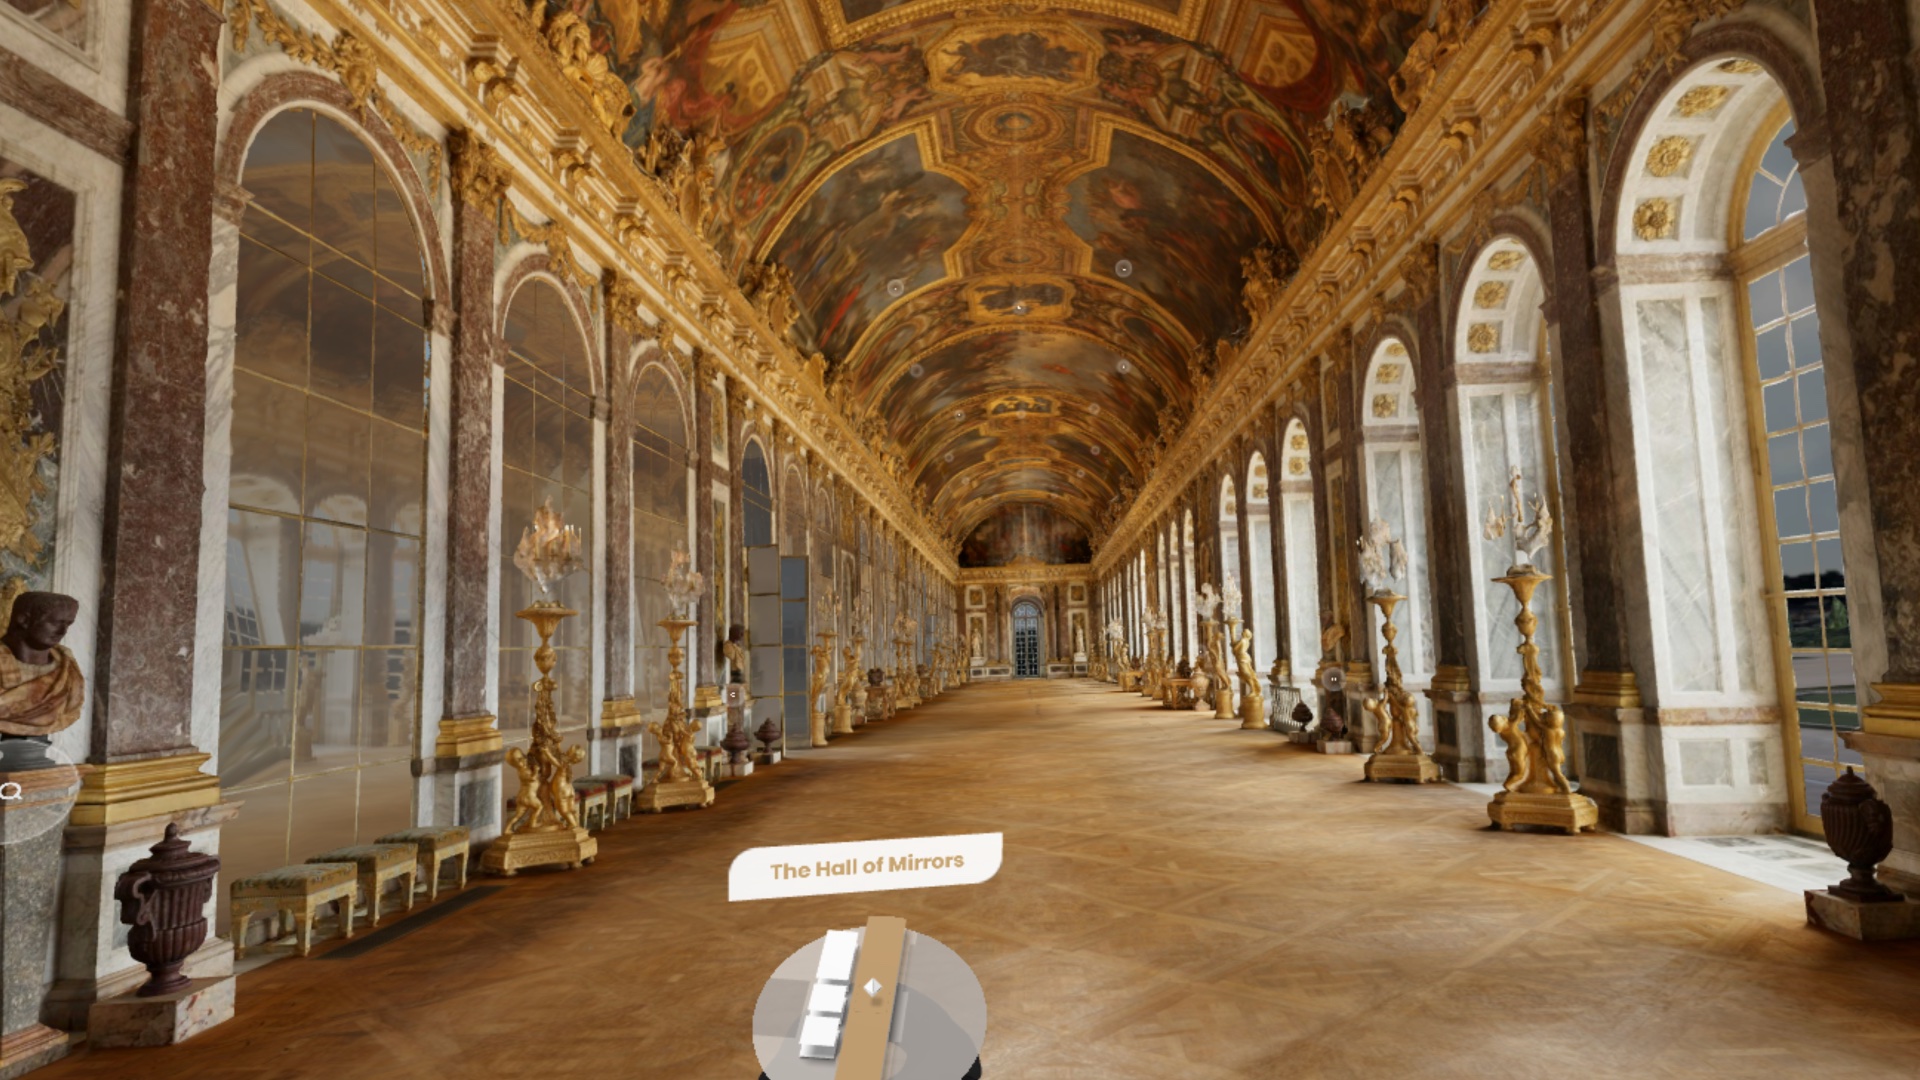 Версальский дворец впервые можно будет посетить виртуально благодаря сотрудничеству с Google Arts & Culture